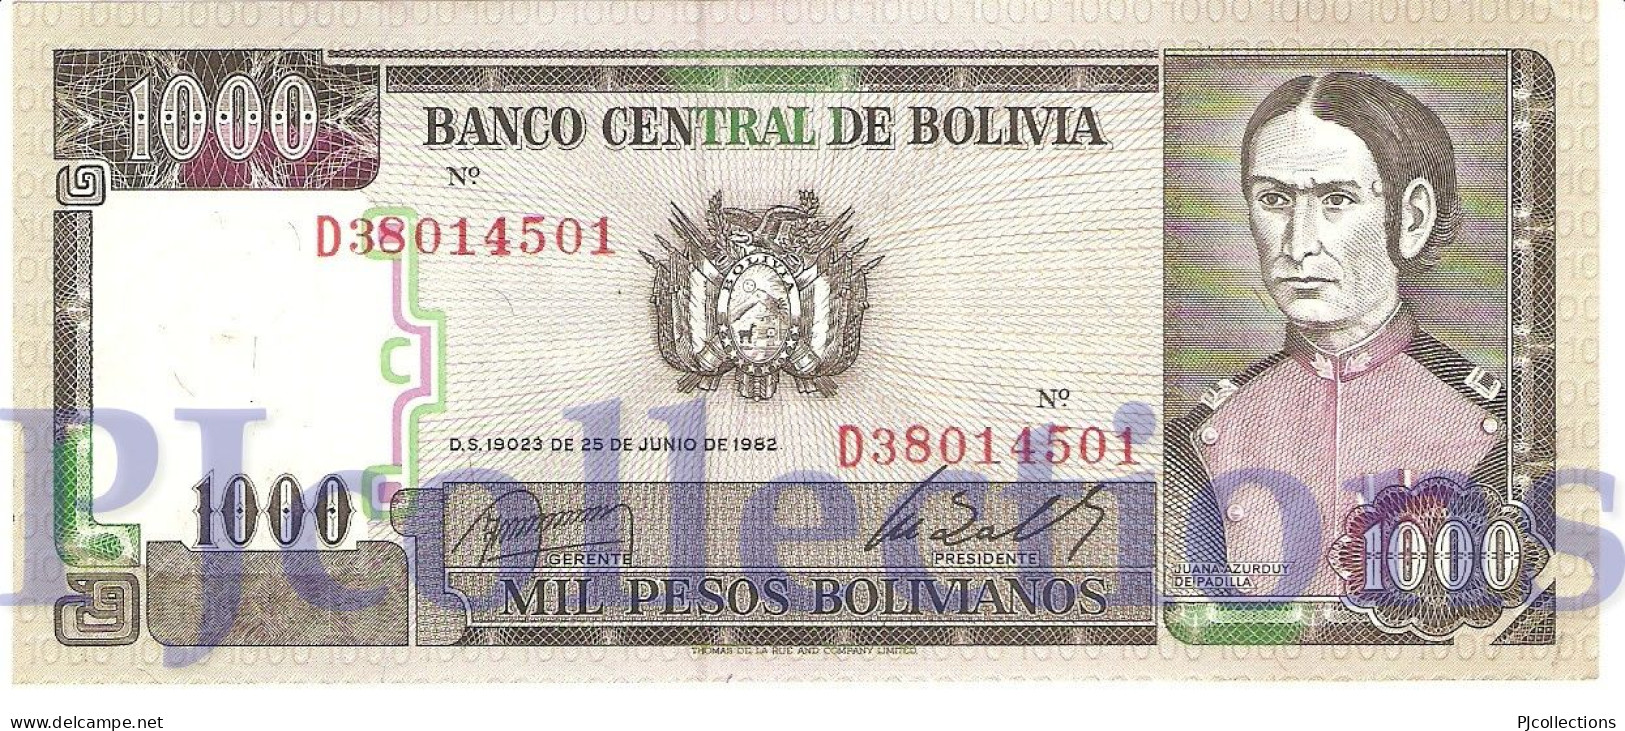 BOLIVIA 1000 BOLIVANOS 1982 PICK 167a UNC - Bolivie